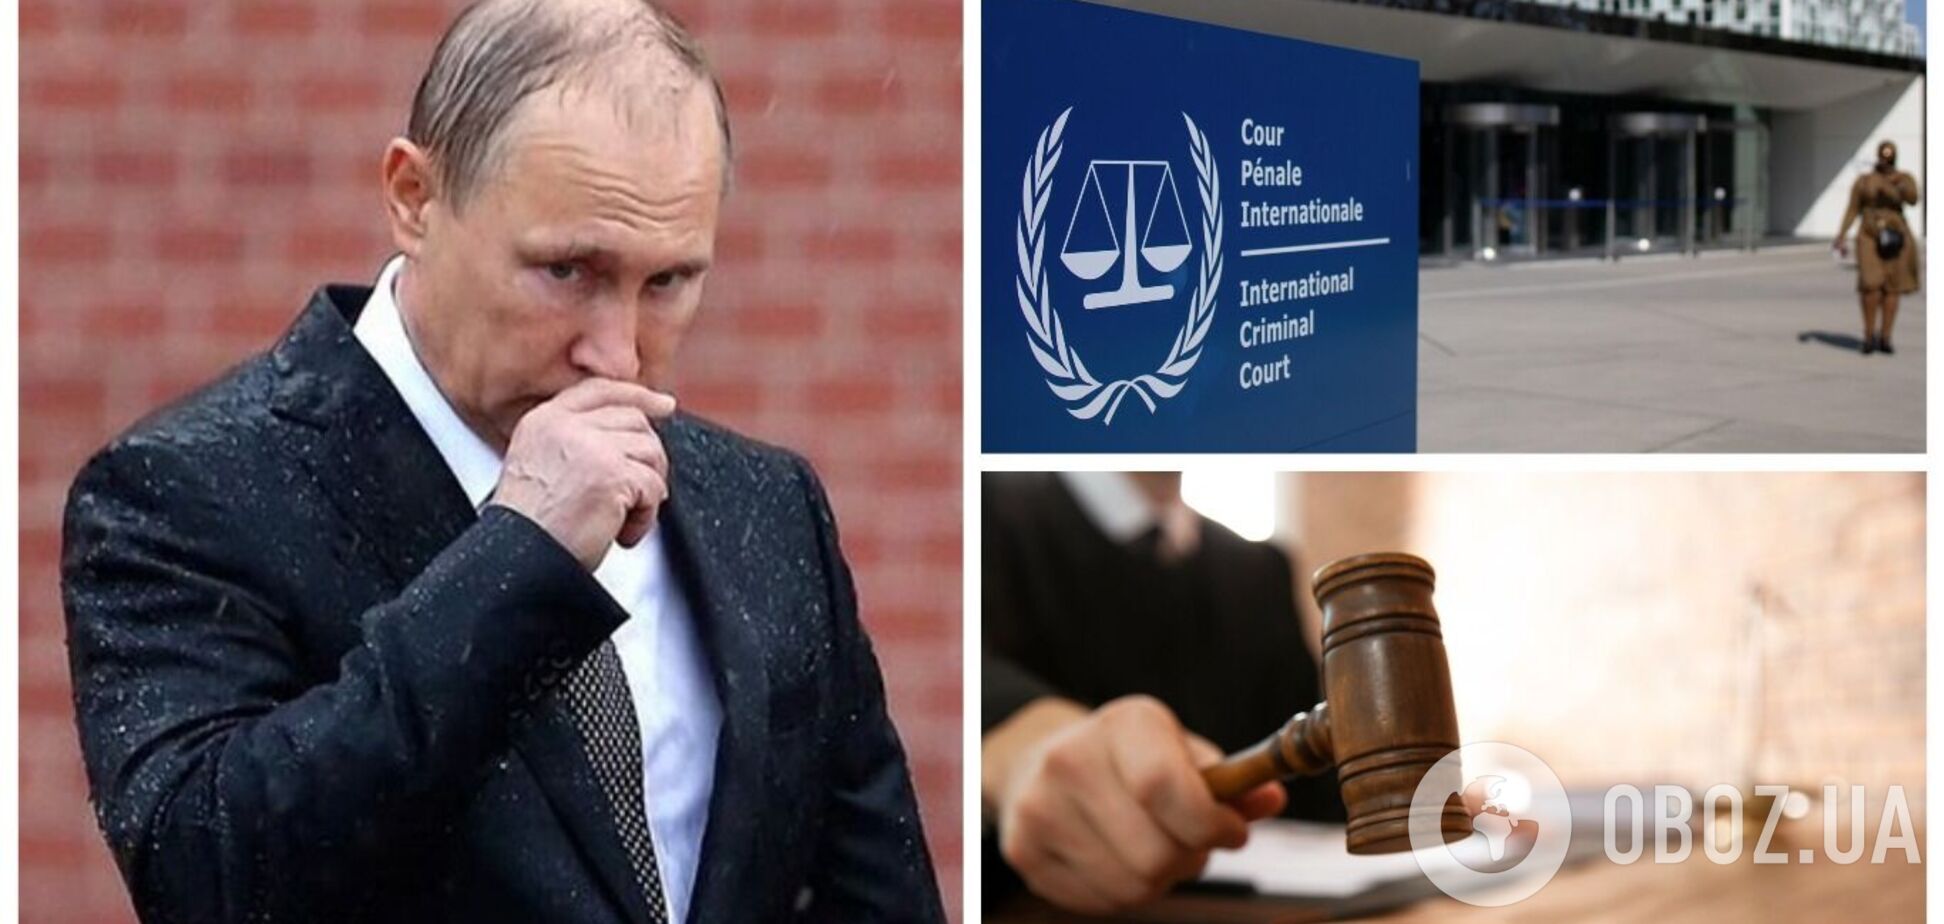 'Путин должен ответить за кровавую войну': как мир реагирует на ордер на арест президента РФ